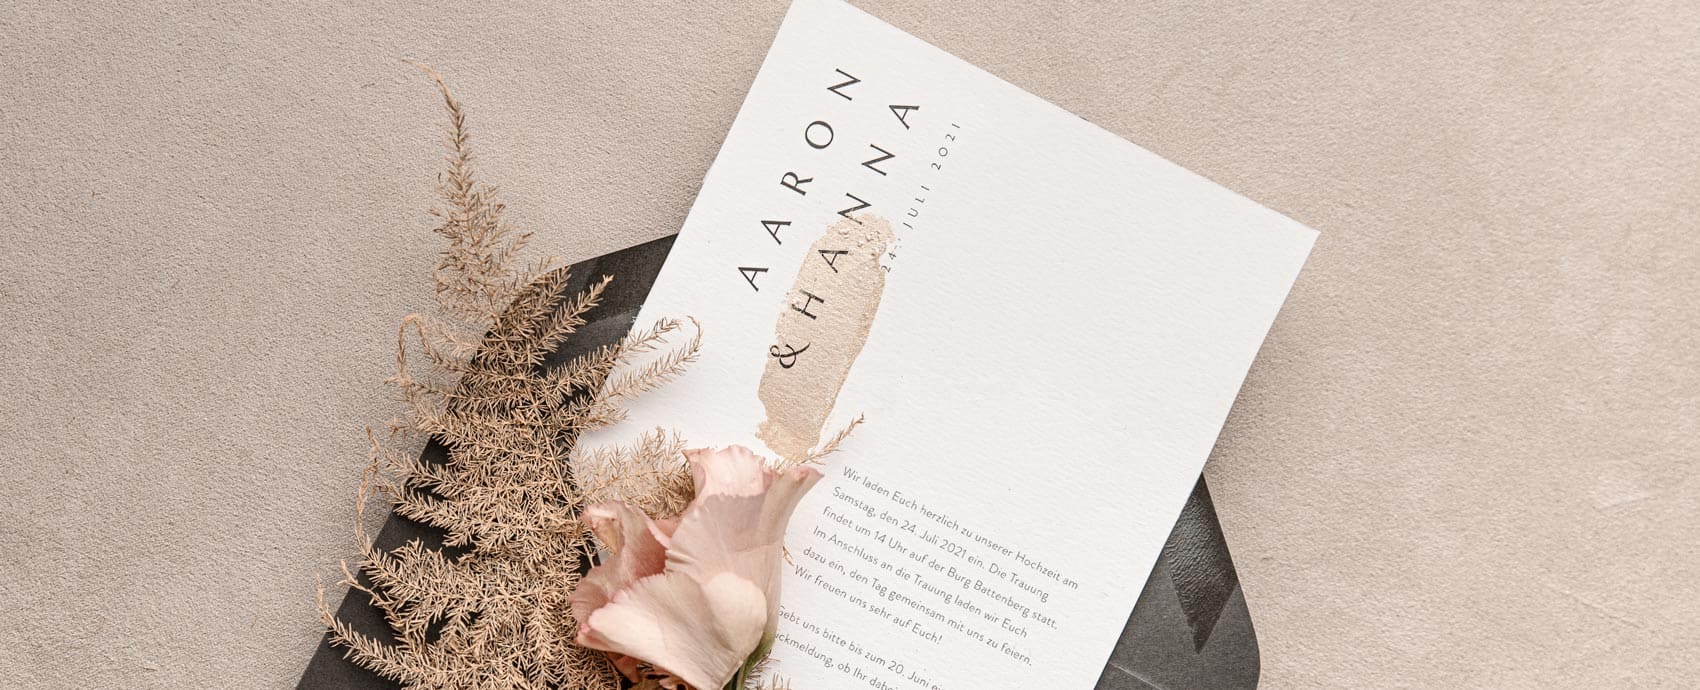 Einladungskarte zur Hochzeit mit Goldfarbe per Hand veredelt in einem grauen umschlag mit Blumen und Farn